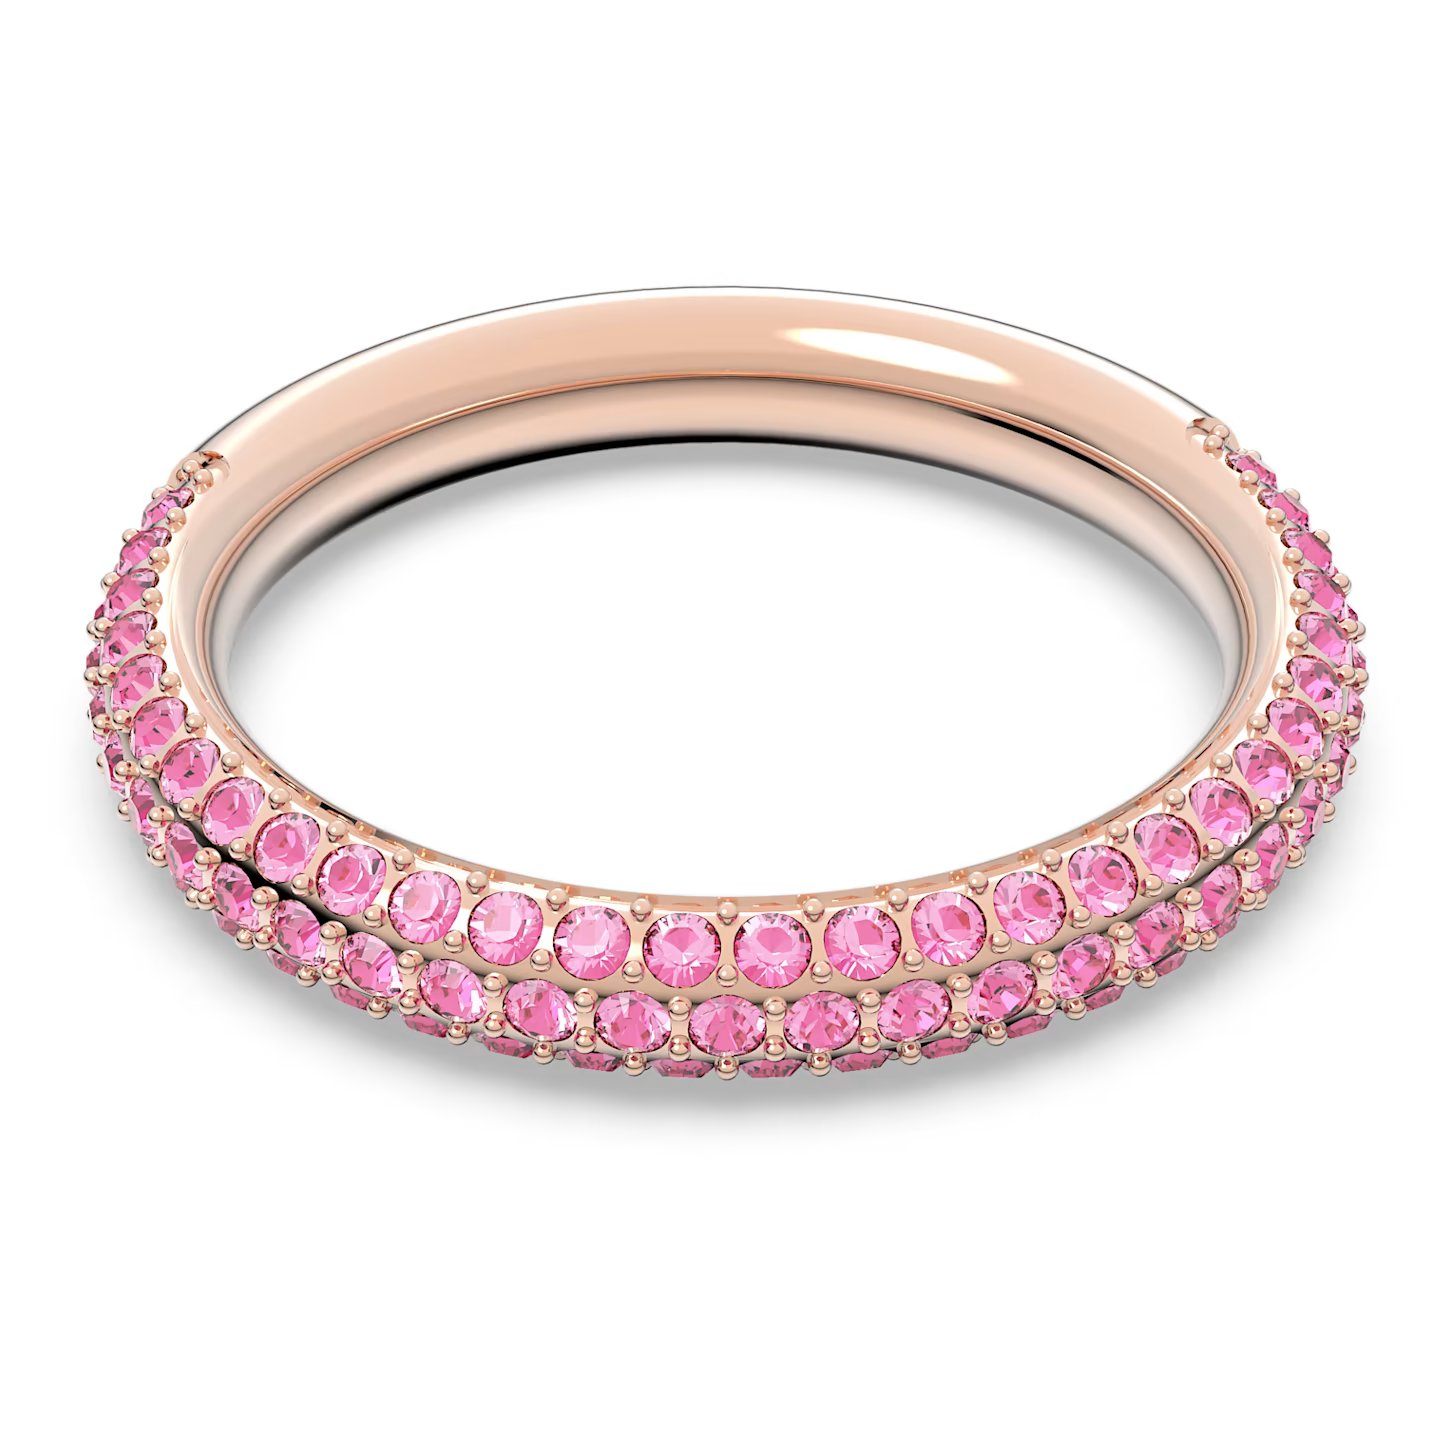 Swarovski Nádherný prsten s růžovými krystaly Swarovski Stone 5642910 50 mm